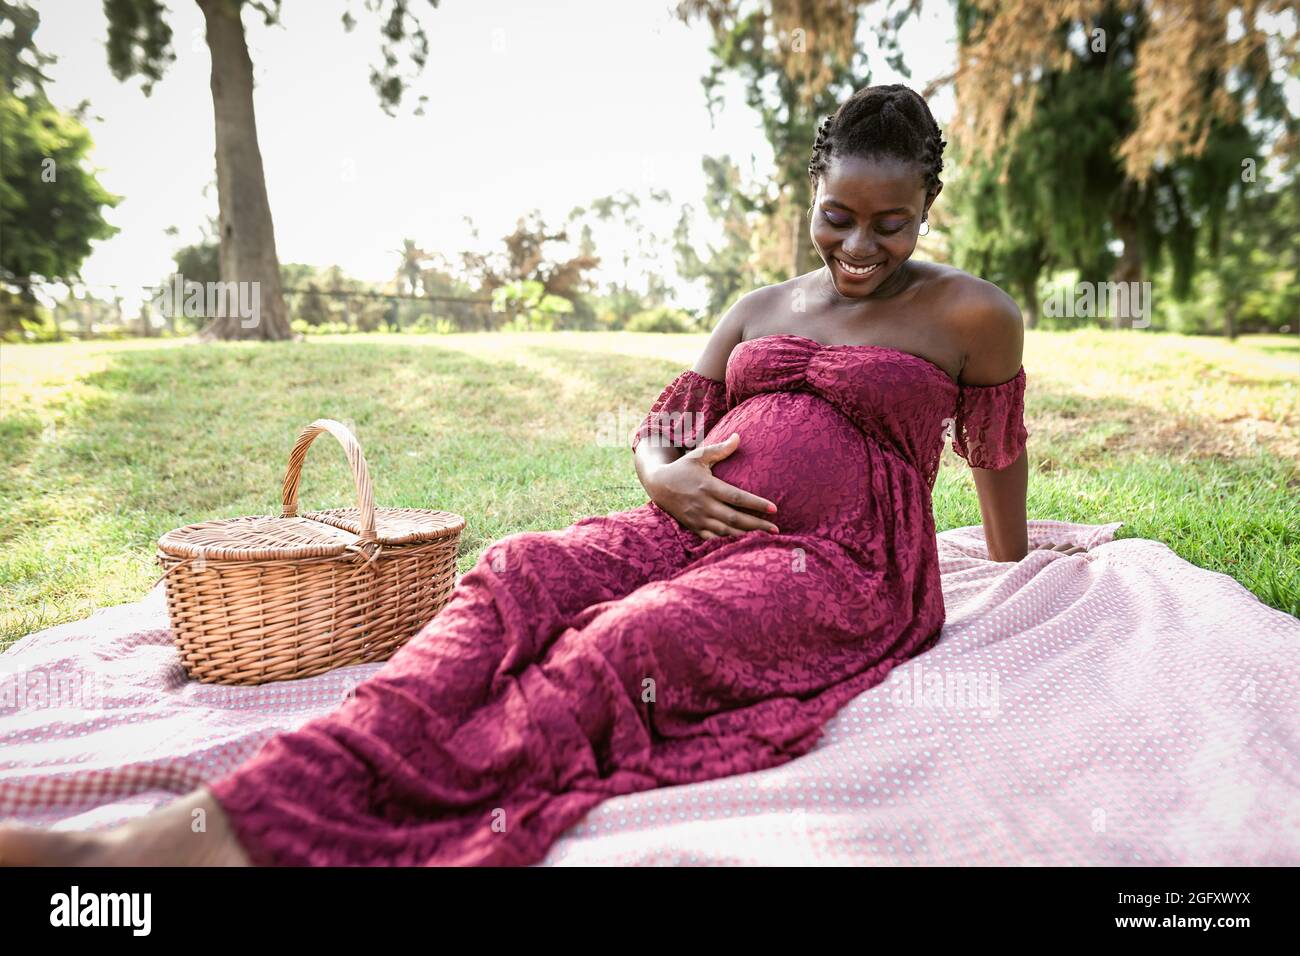 Donna africana carezzando il suo ventre incinta mentre fa un picnic nel parco - concetto di stile di vita di maternità Foto Stock